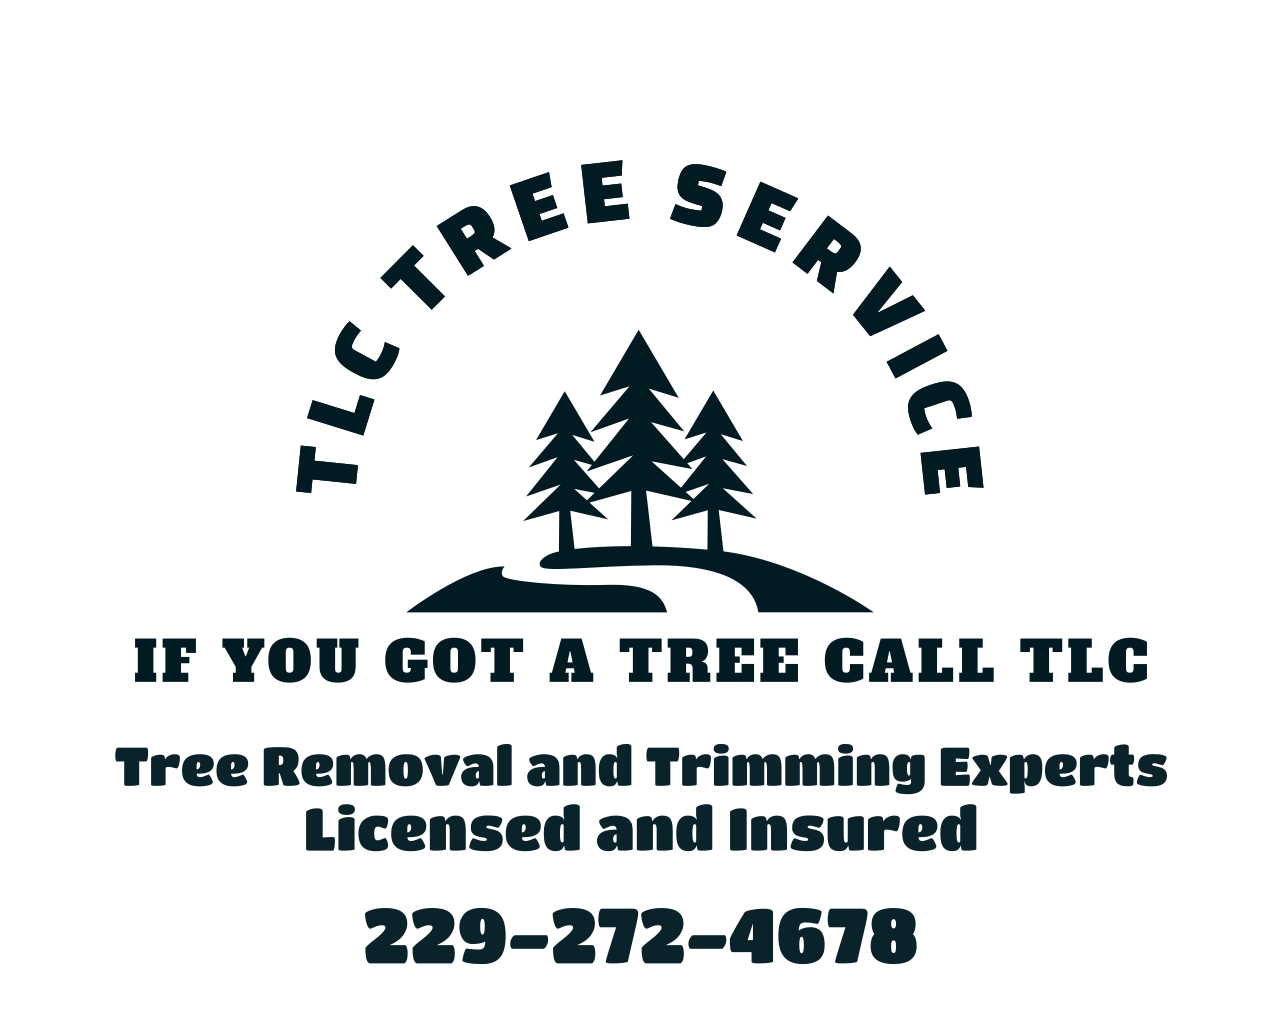 TLC Tree Service 's web page